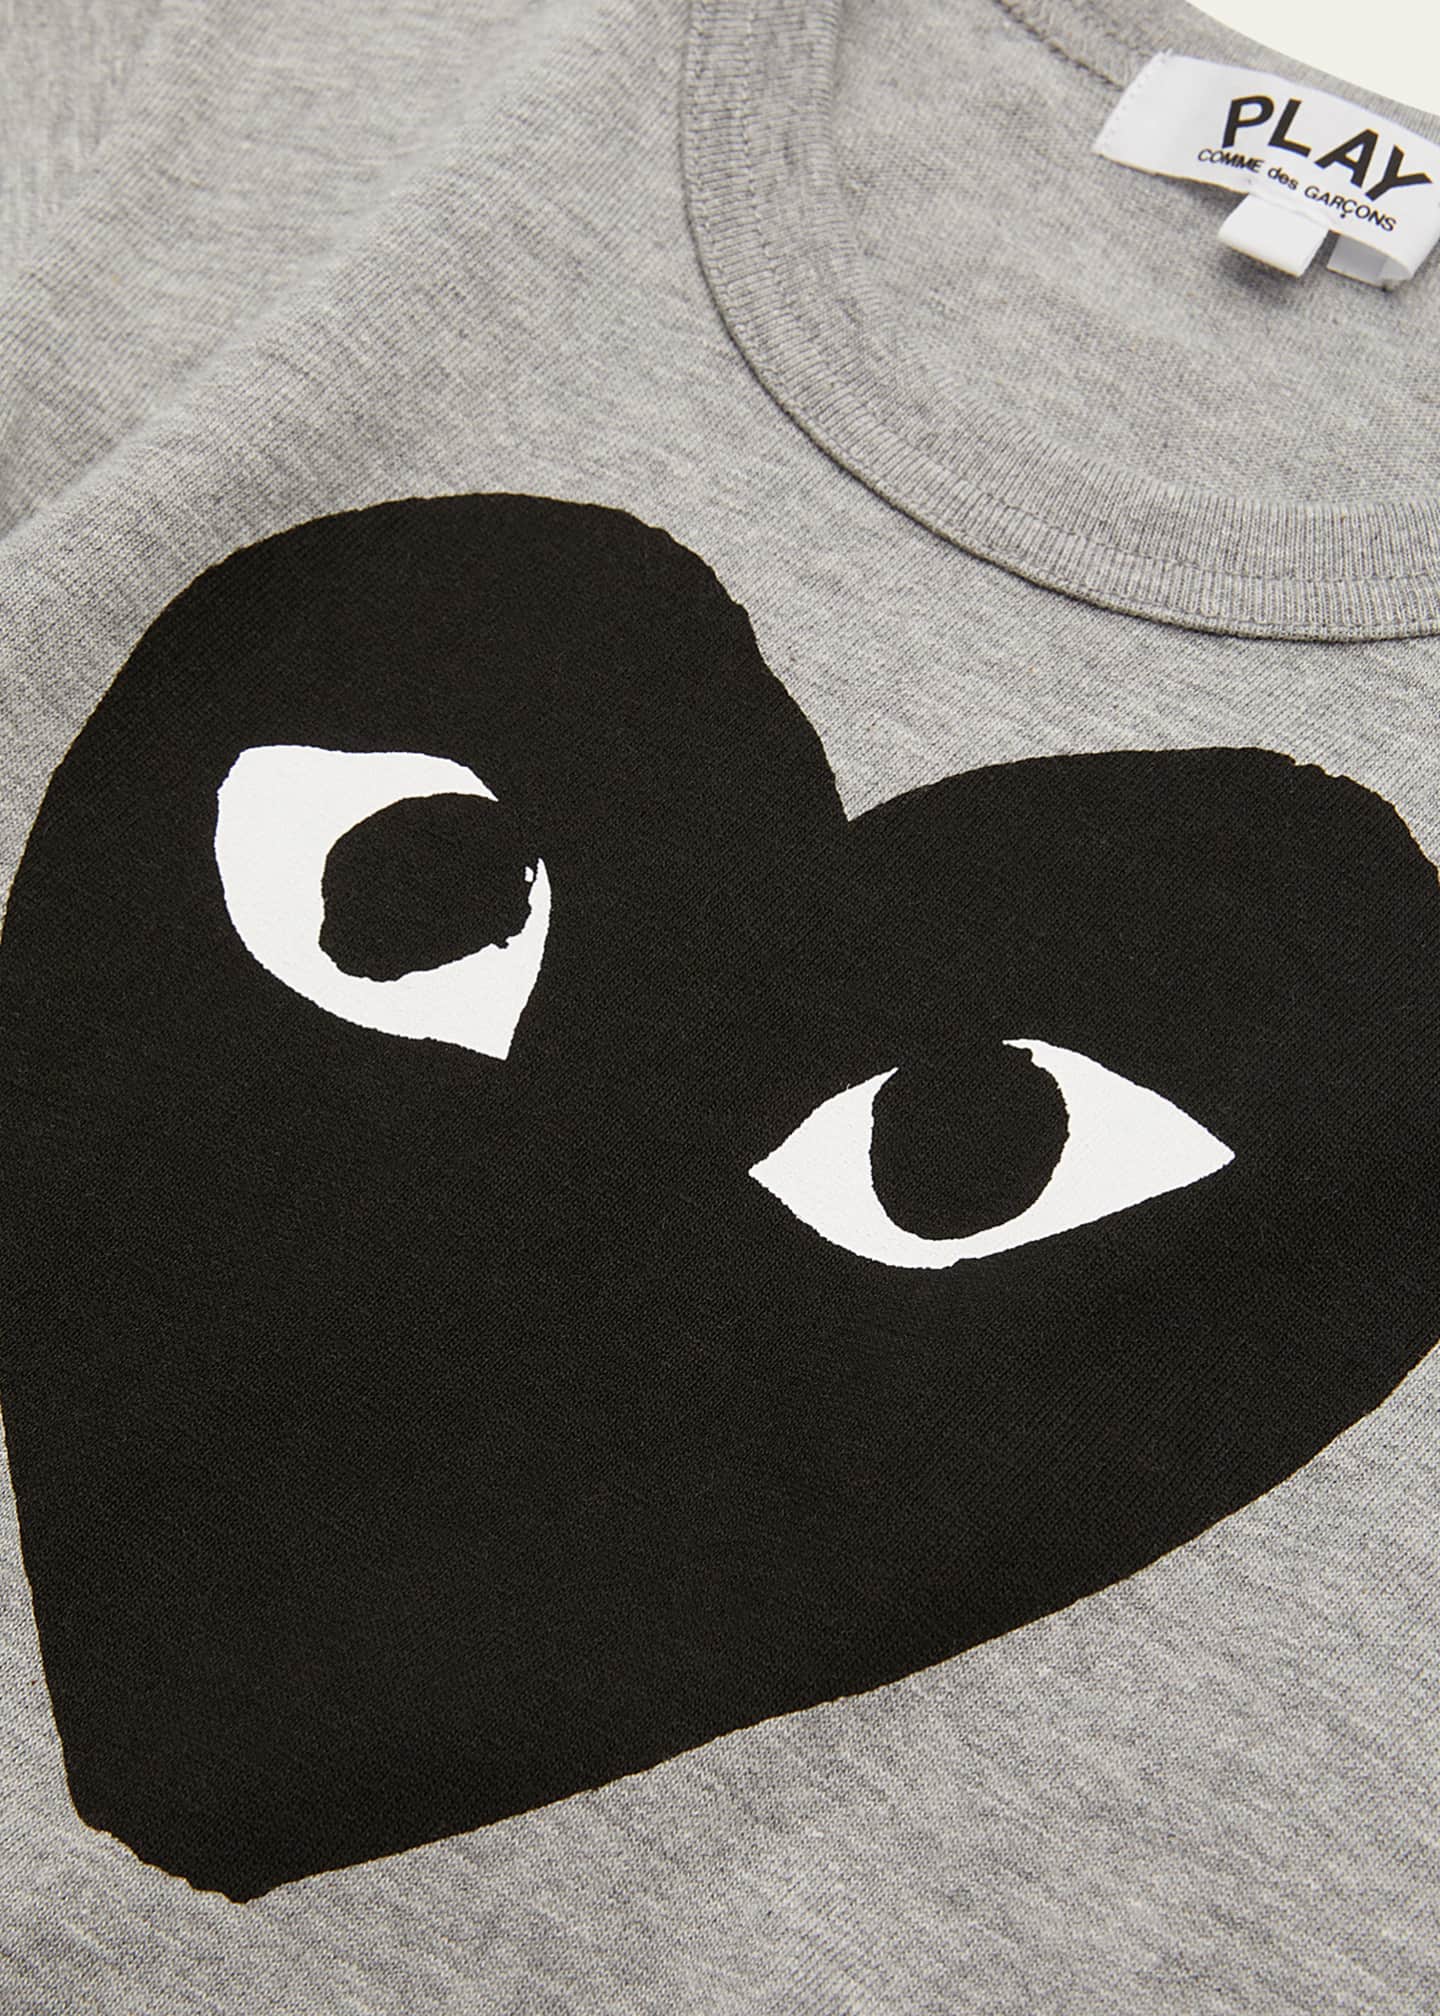 lytter retning kryds Comme des Garcons Kid's Heart Logo-Print T-Shirt, Size 2-6 - Bergdorf  Goodman